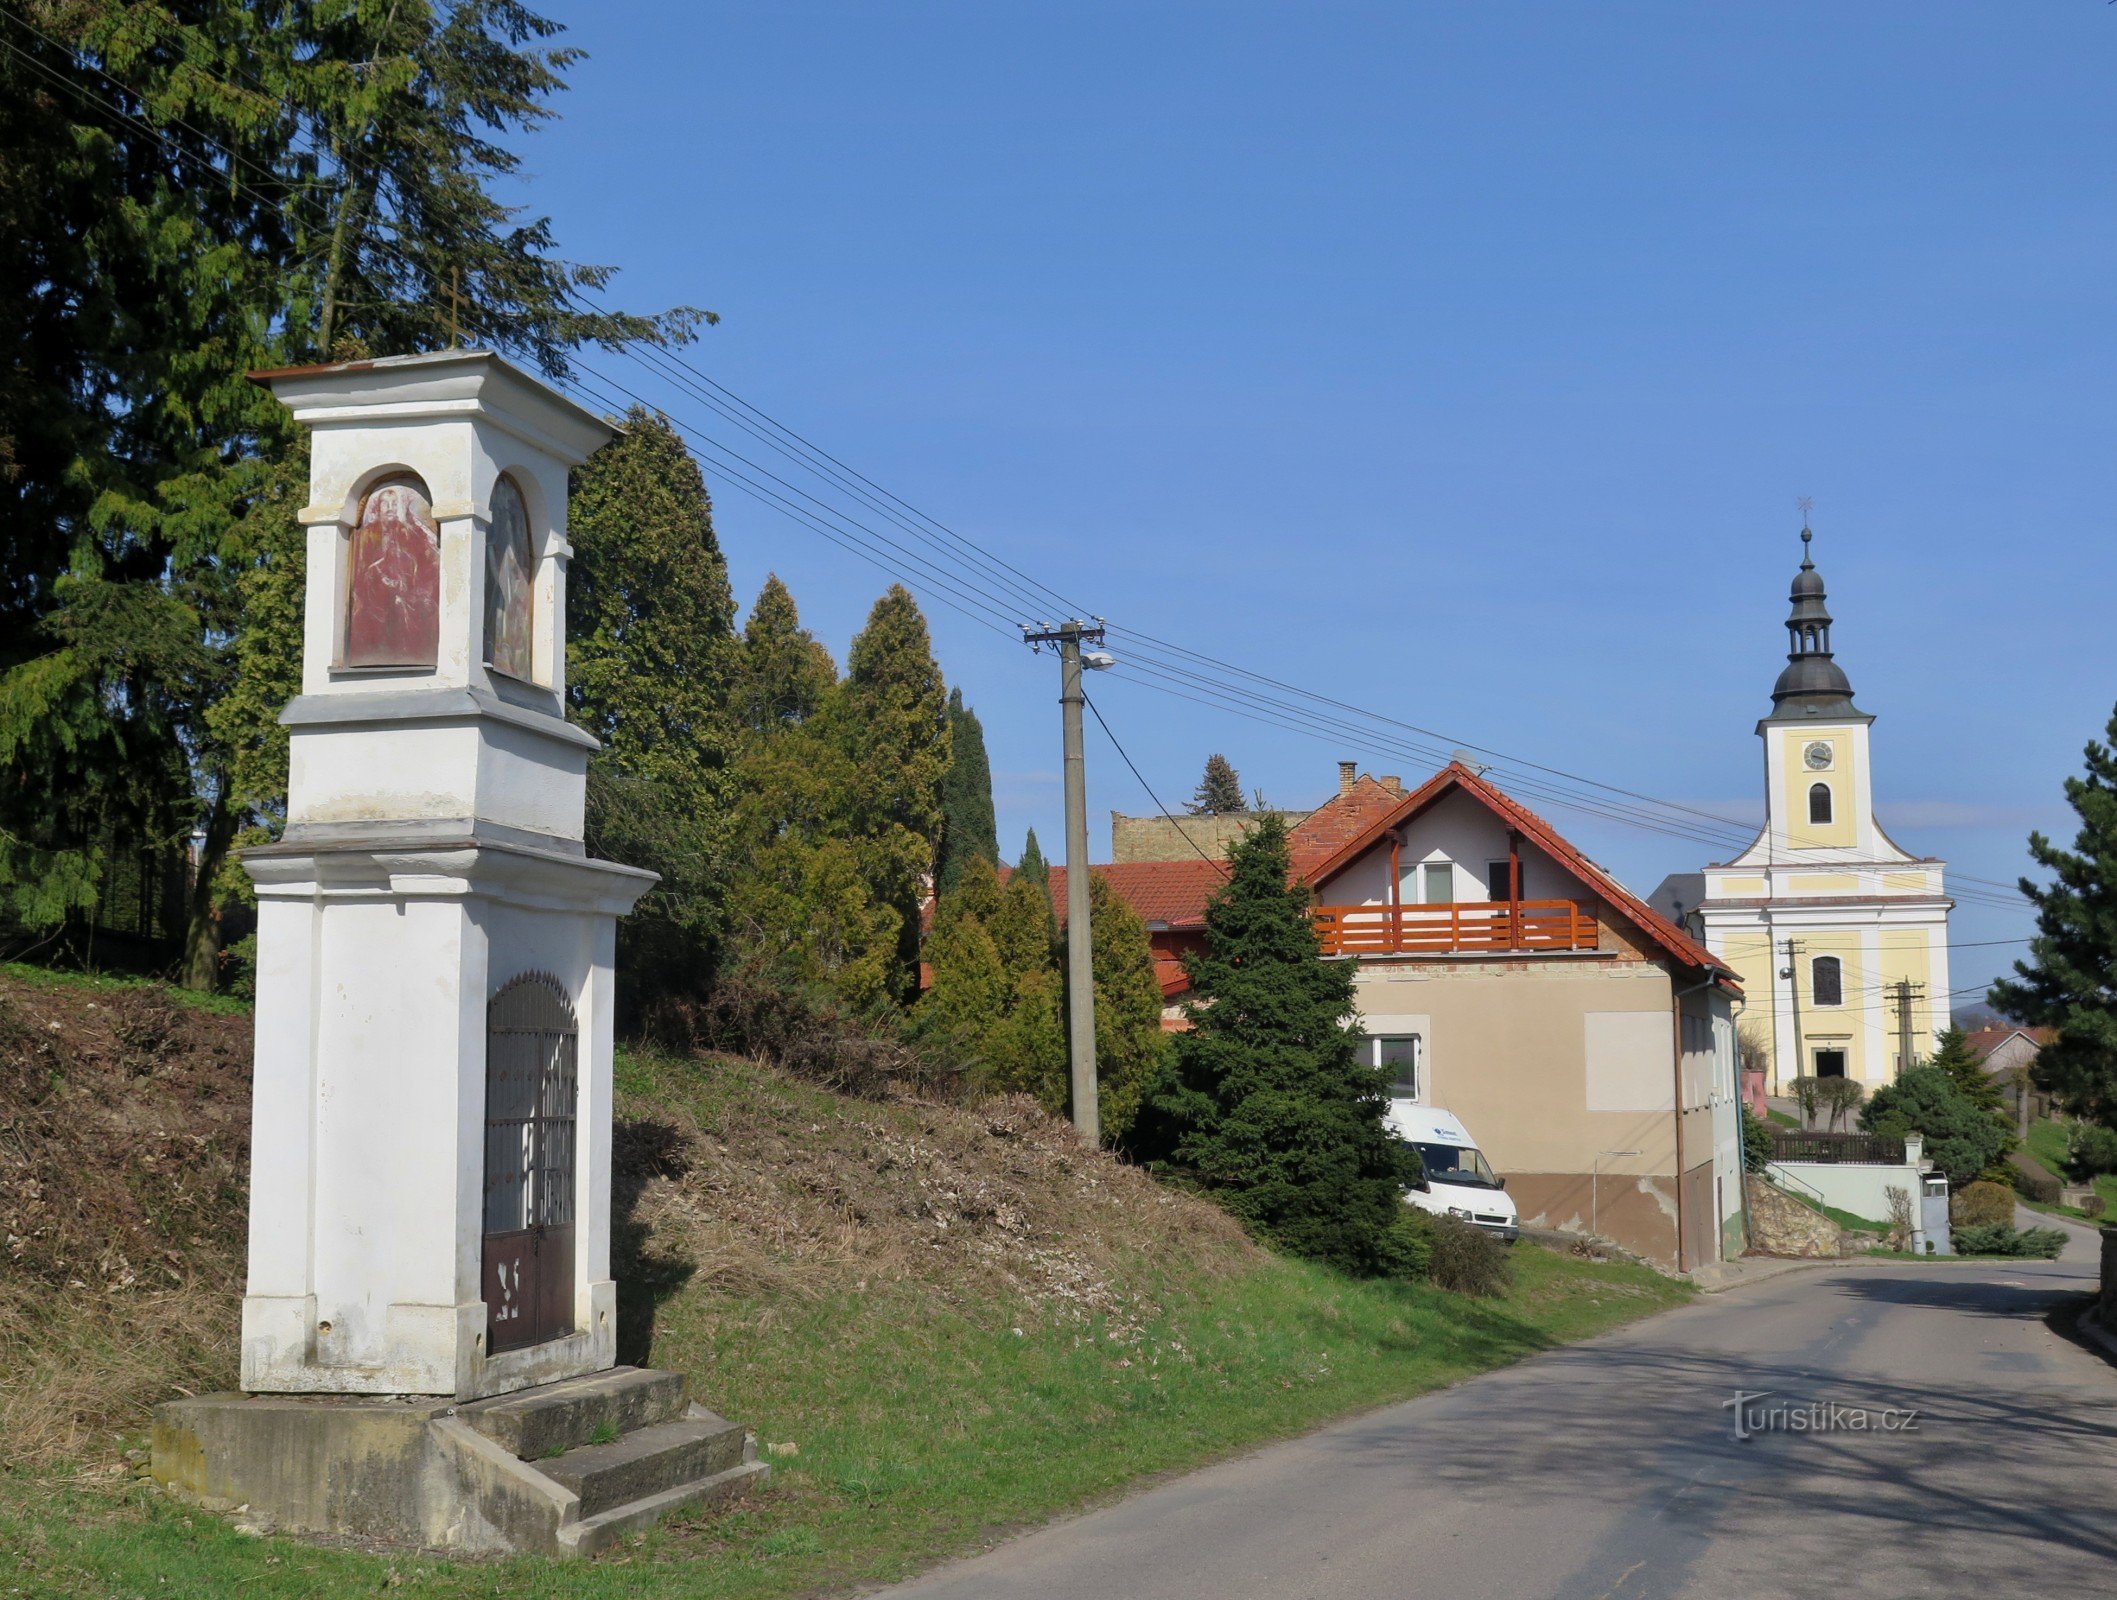 Velké Opatovice – Pyhän Nikolauksen kappeli. Rosalie